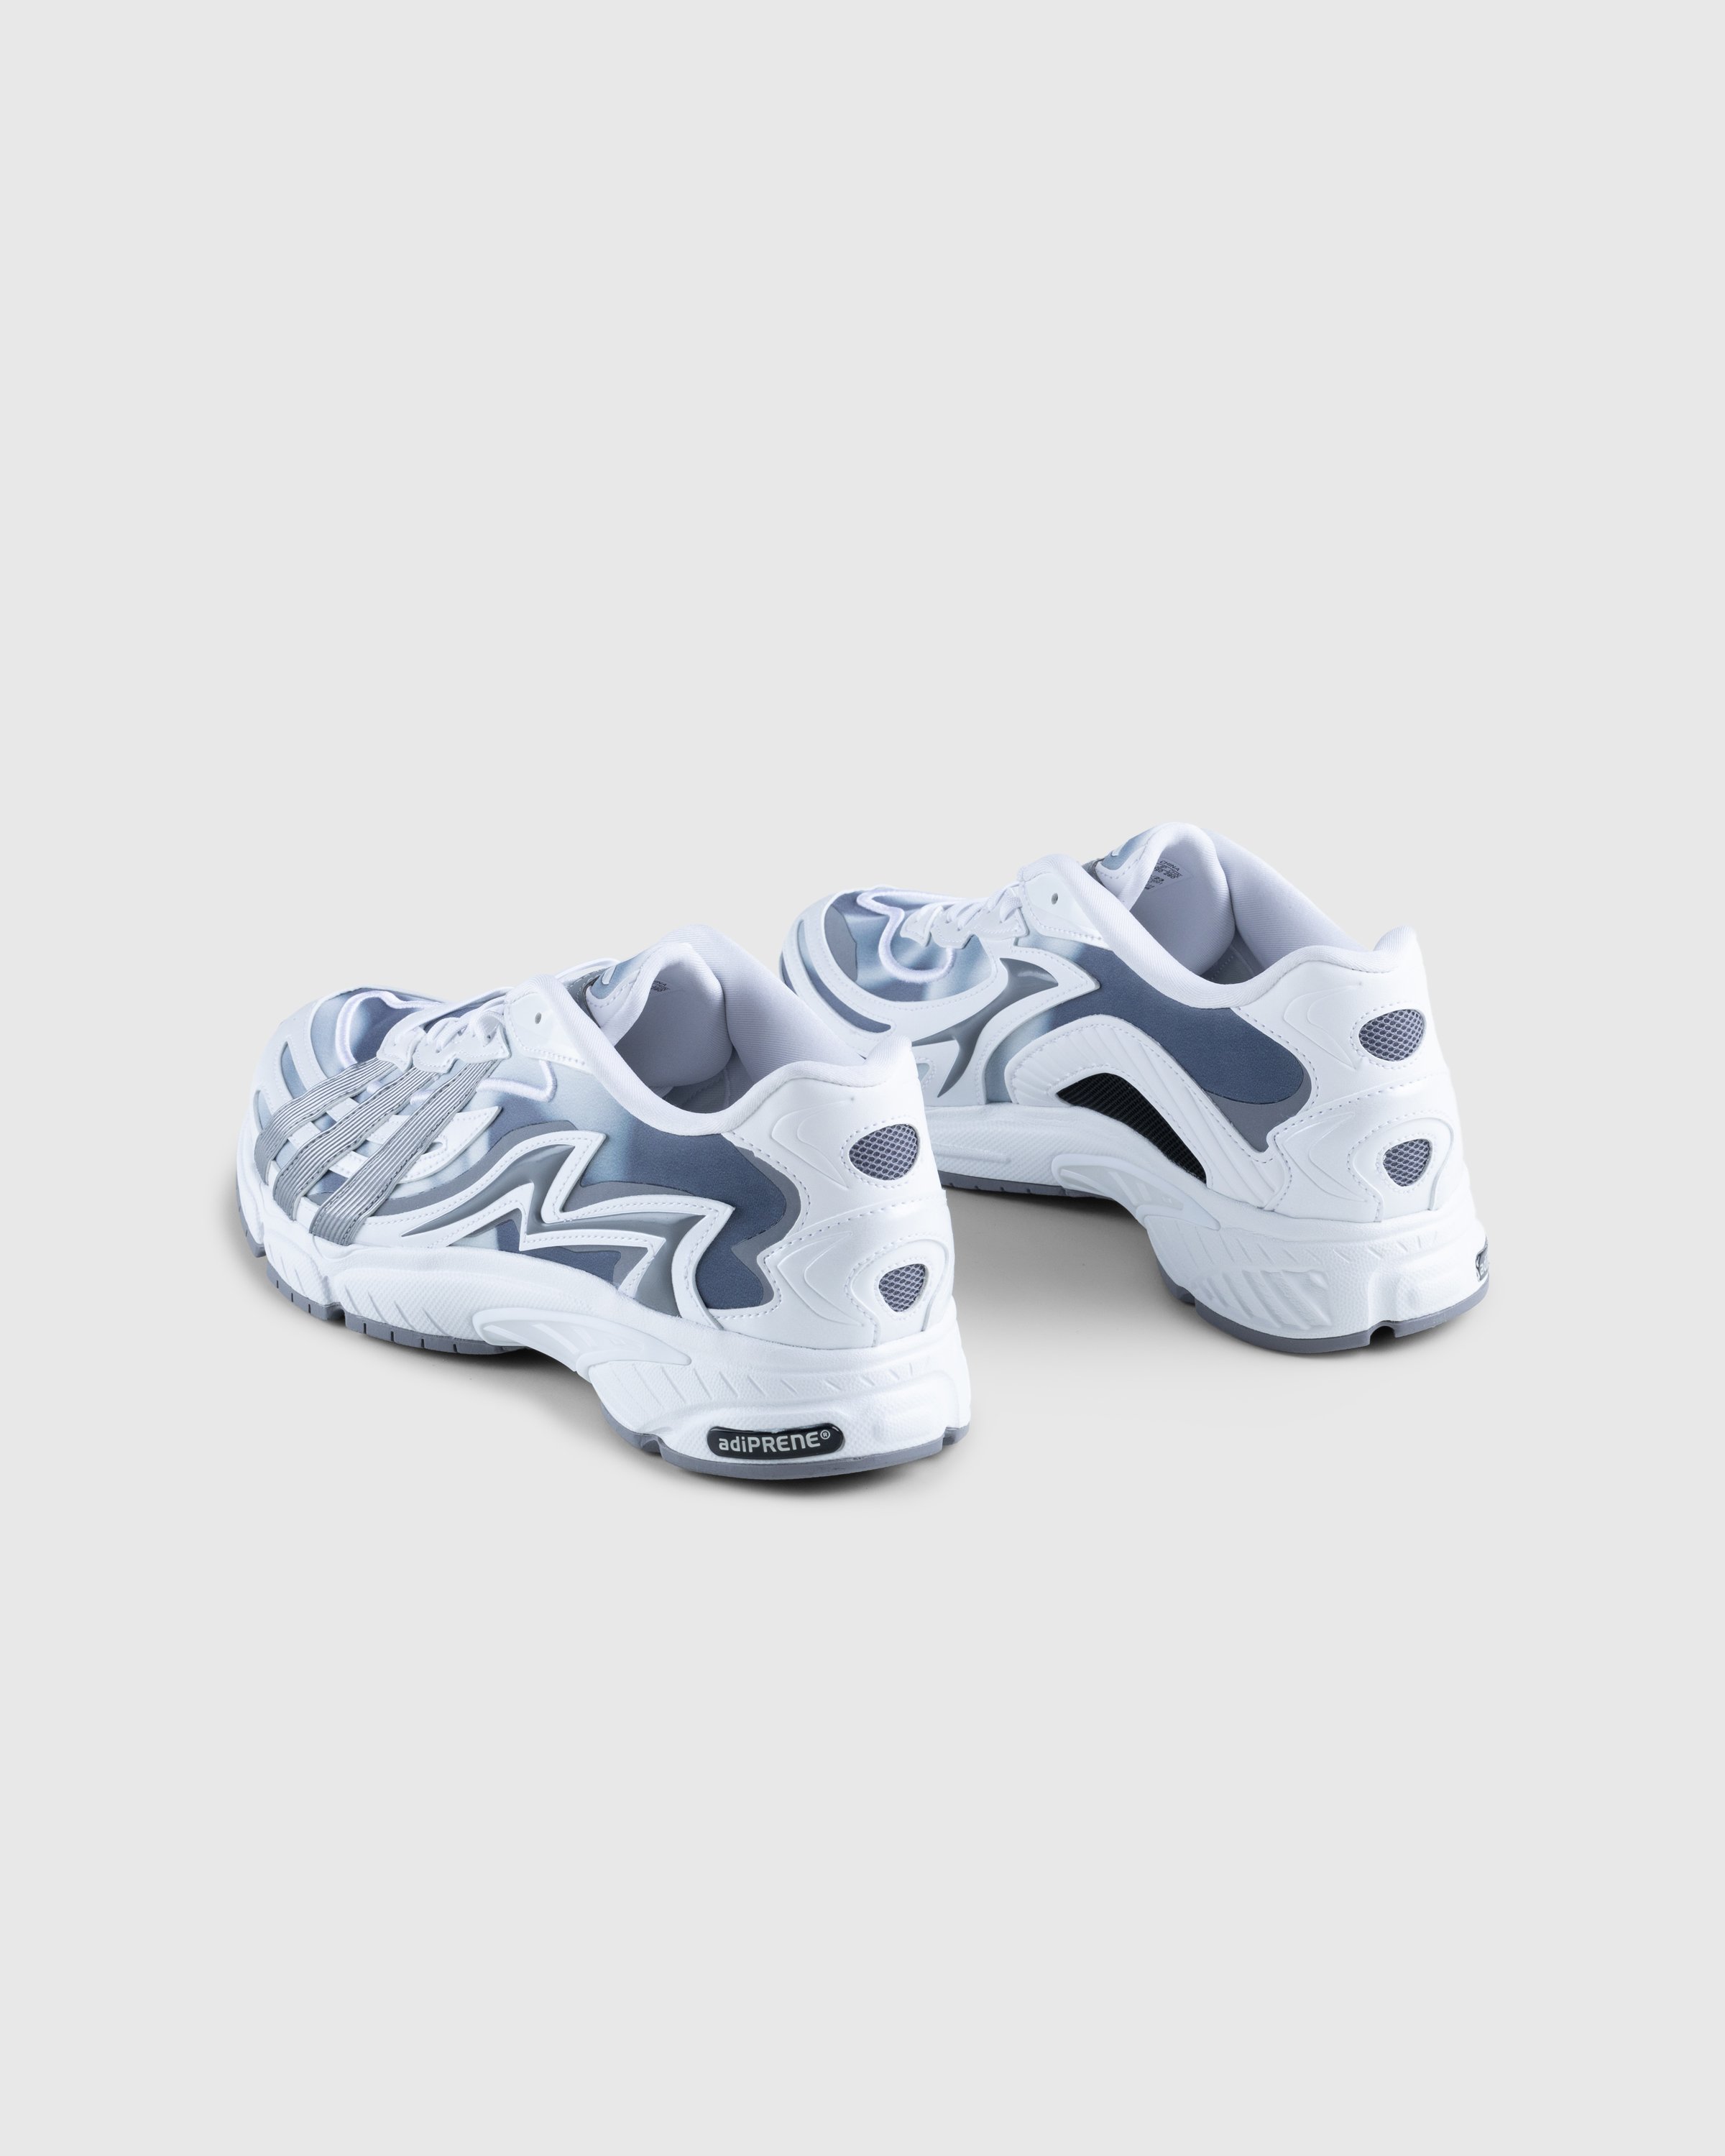 Adidas - Orketro White - Footwear - White - Image 4